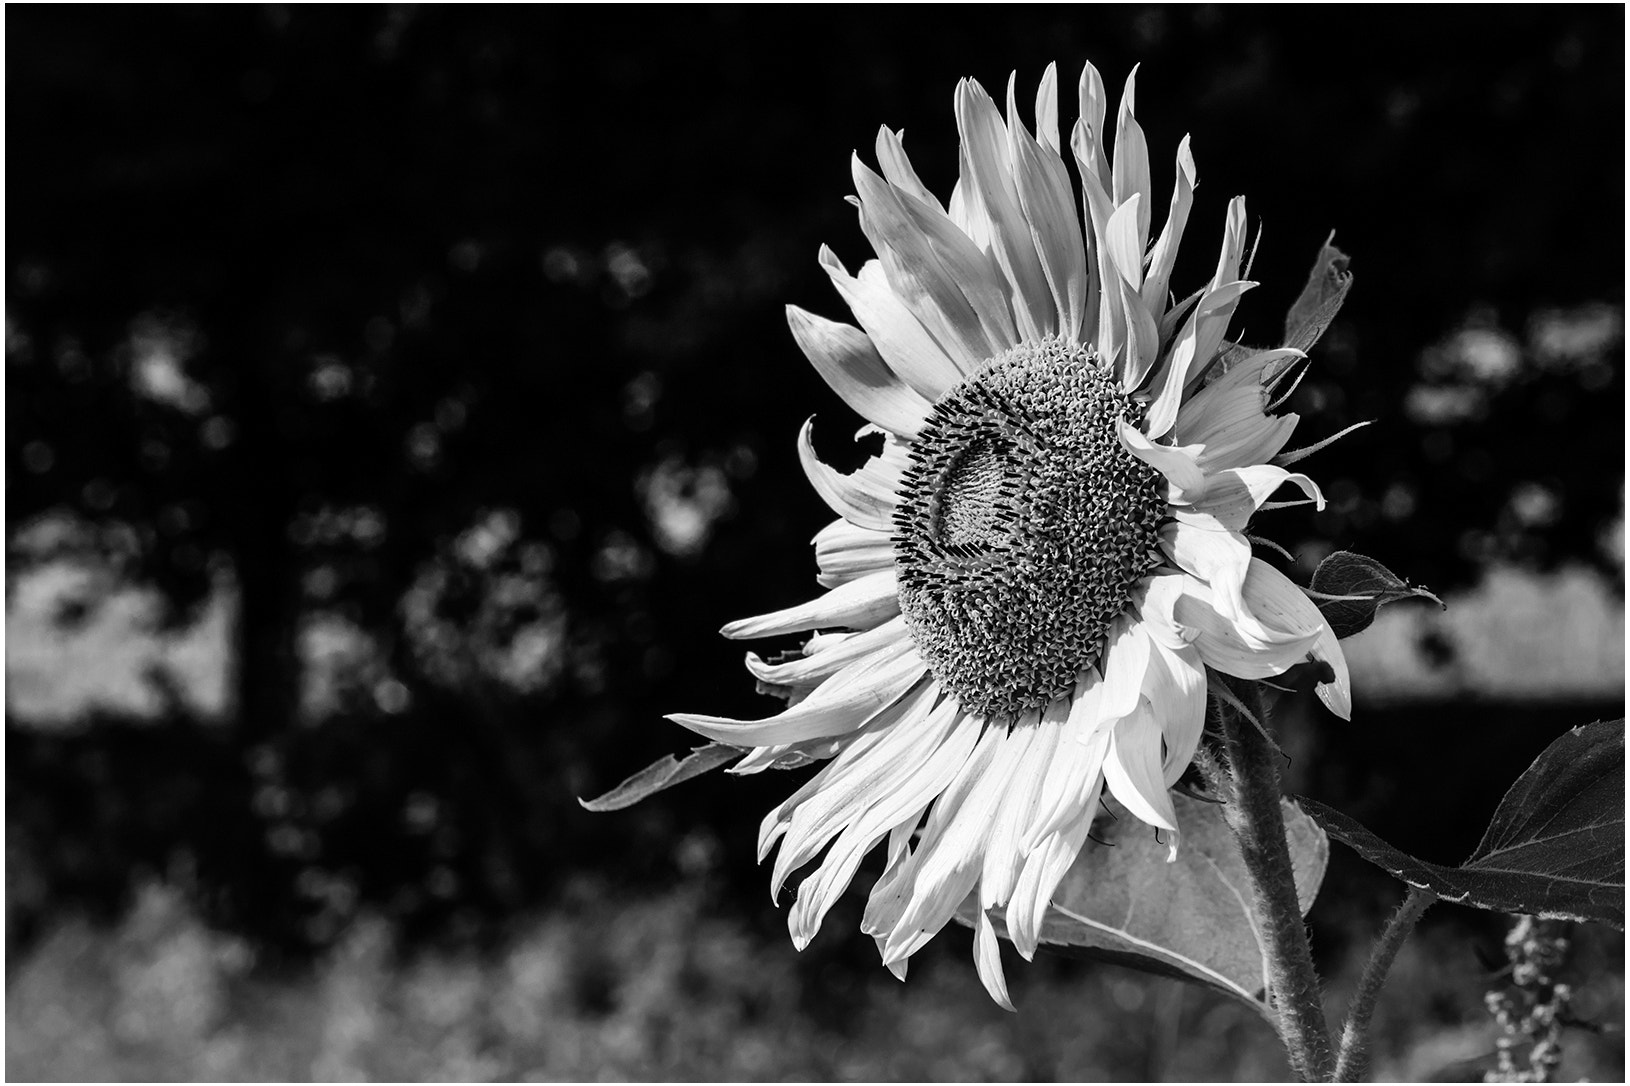 Canon EOS-1D X Mark II sample photo. Sunflower photography